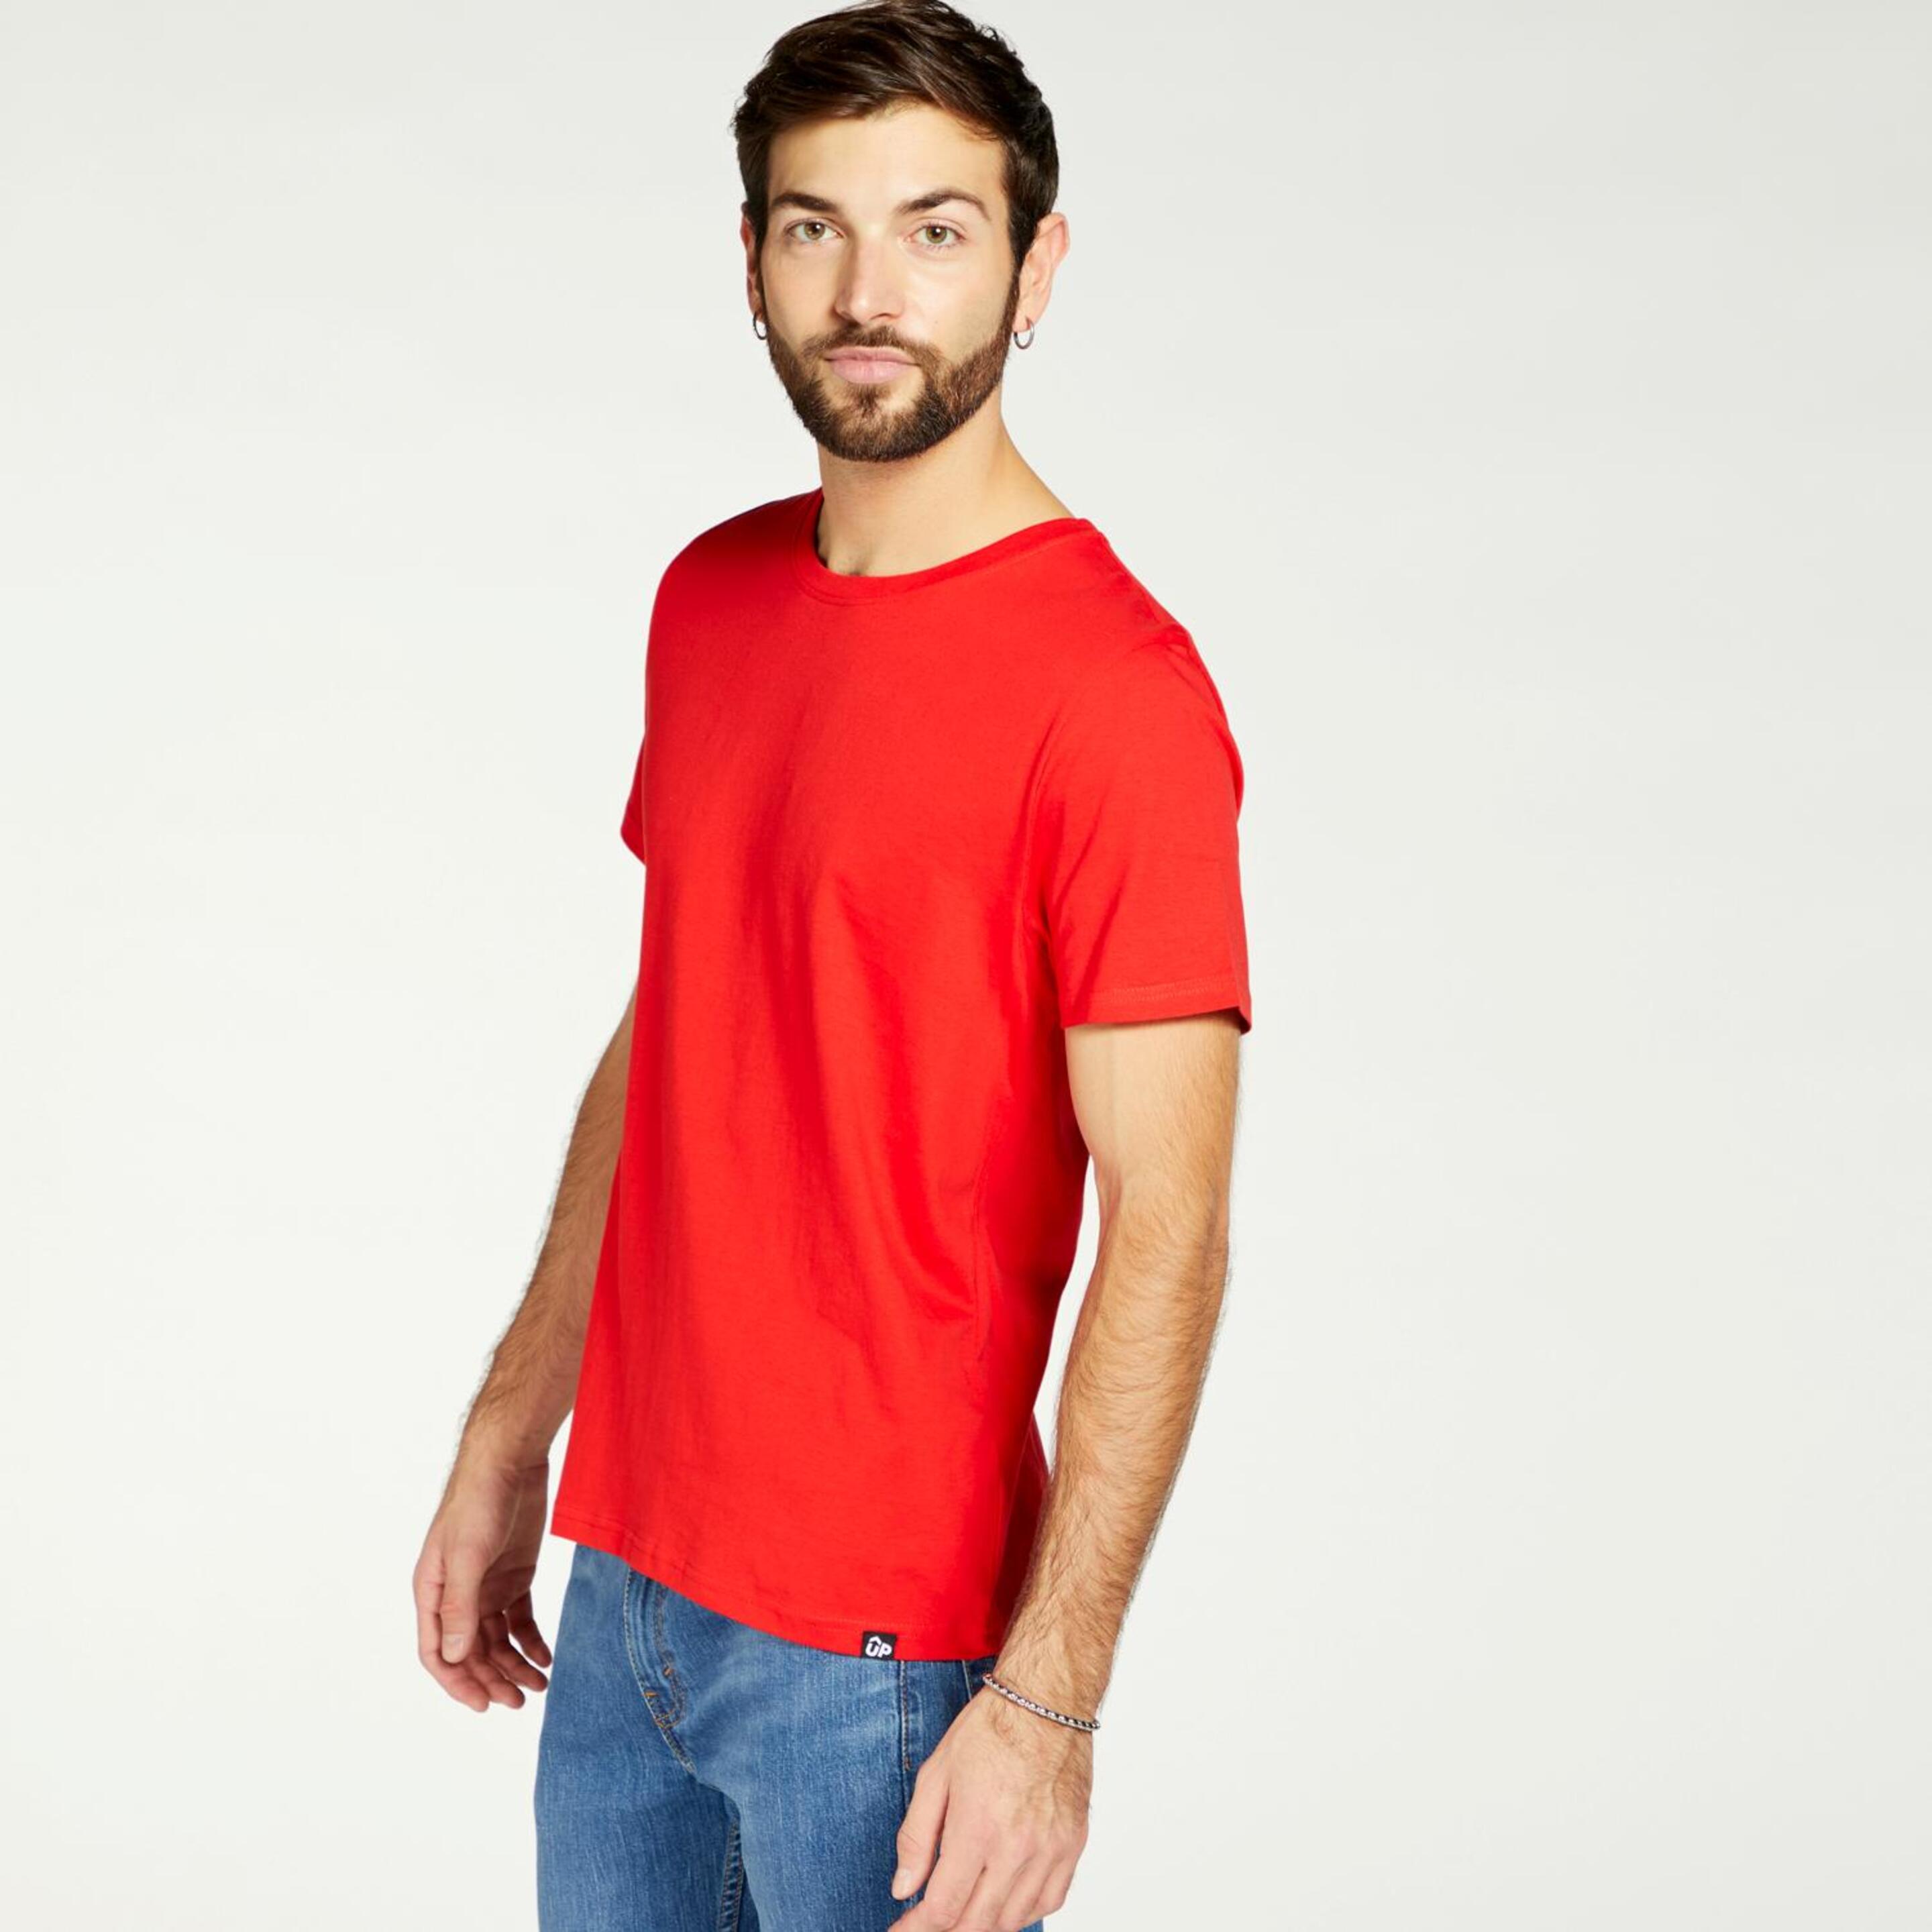 Up Basic - Vermelho - T-shirt Homem | Sport Zone